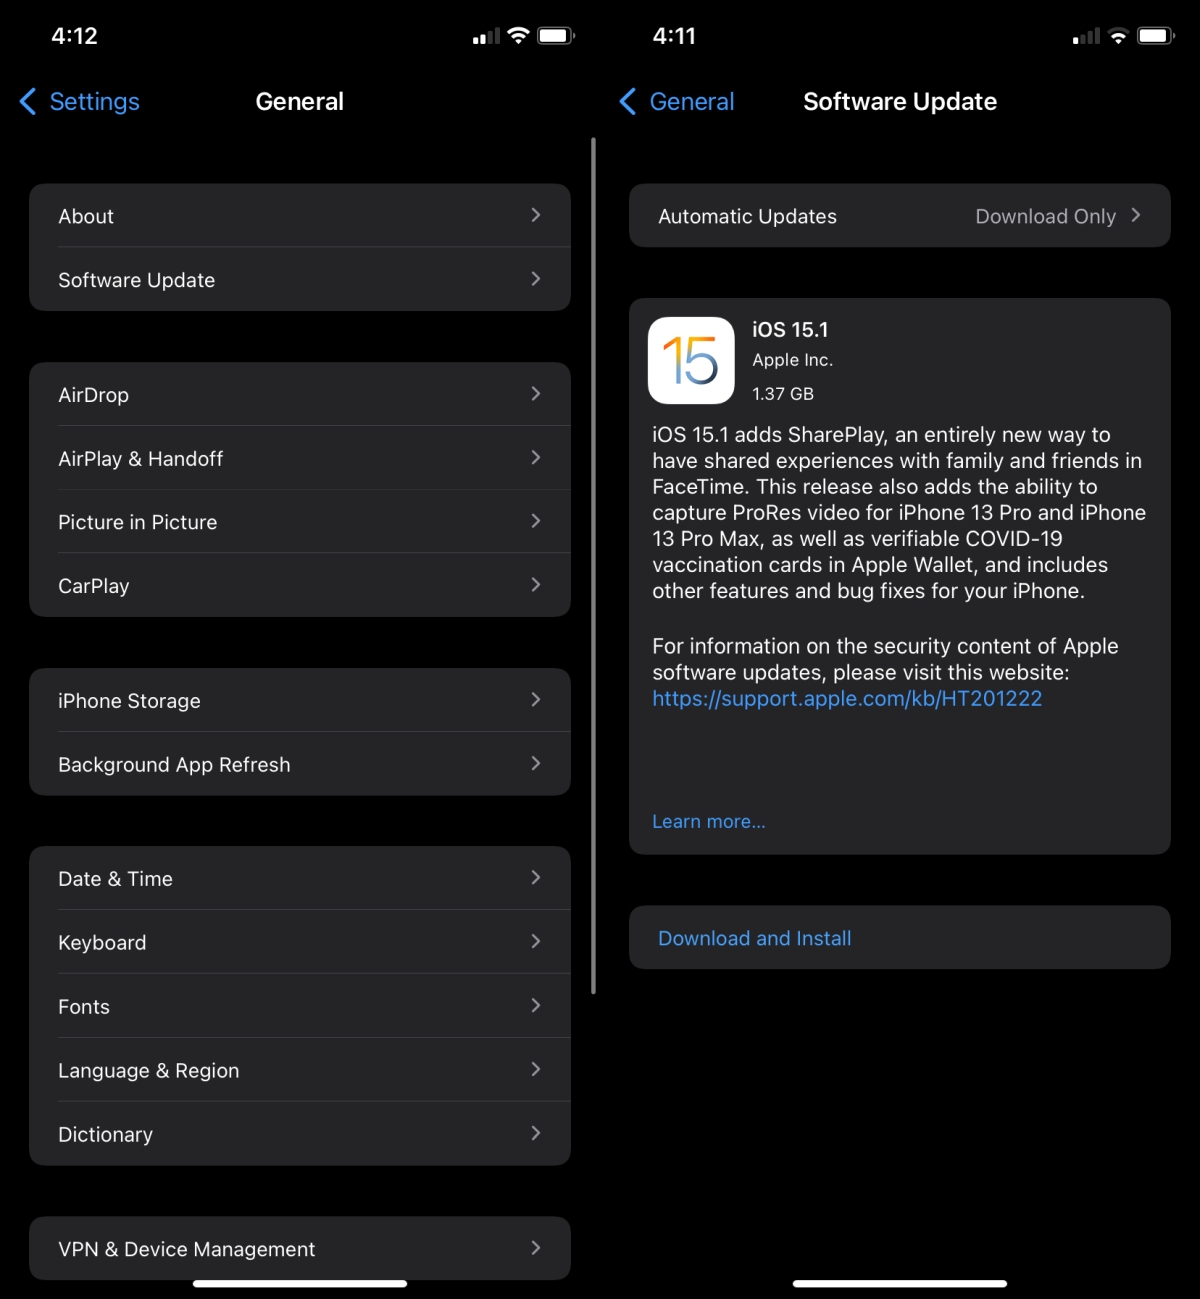 update ios - Come risolvere i problemi Wi-Fi con iOS 15